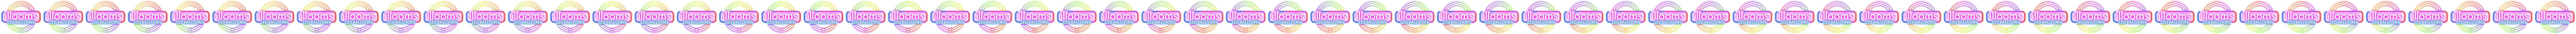 5 palloncini viola con LED illooms™